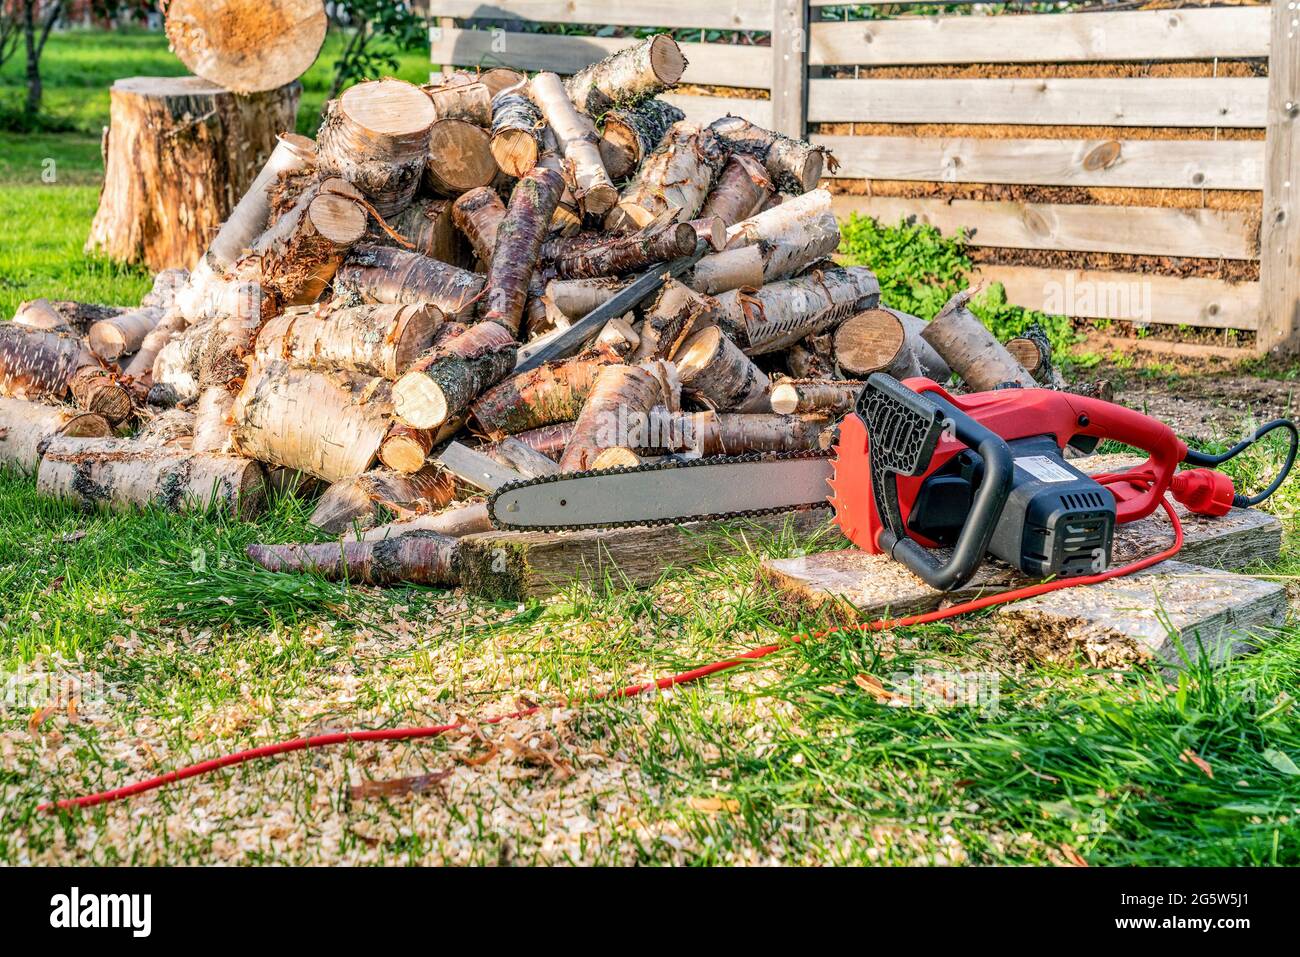 Großer Stapel runder Holzschnitte, rote elektrische Kettensäge. Die Baumstämme werden aus den in einem Haufen gestapelten Birkenstämmen gesägt. Birkenbrennholz. Kompost e Stockfoto